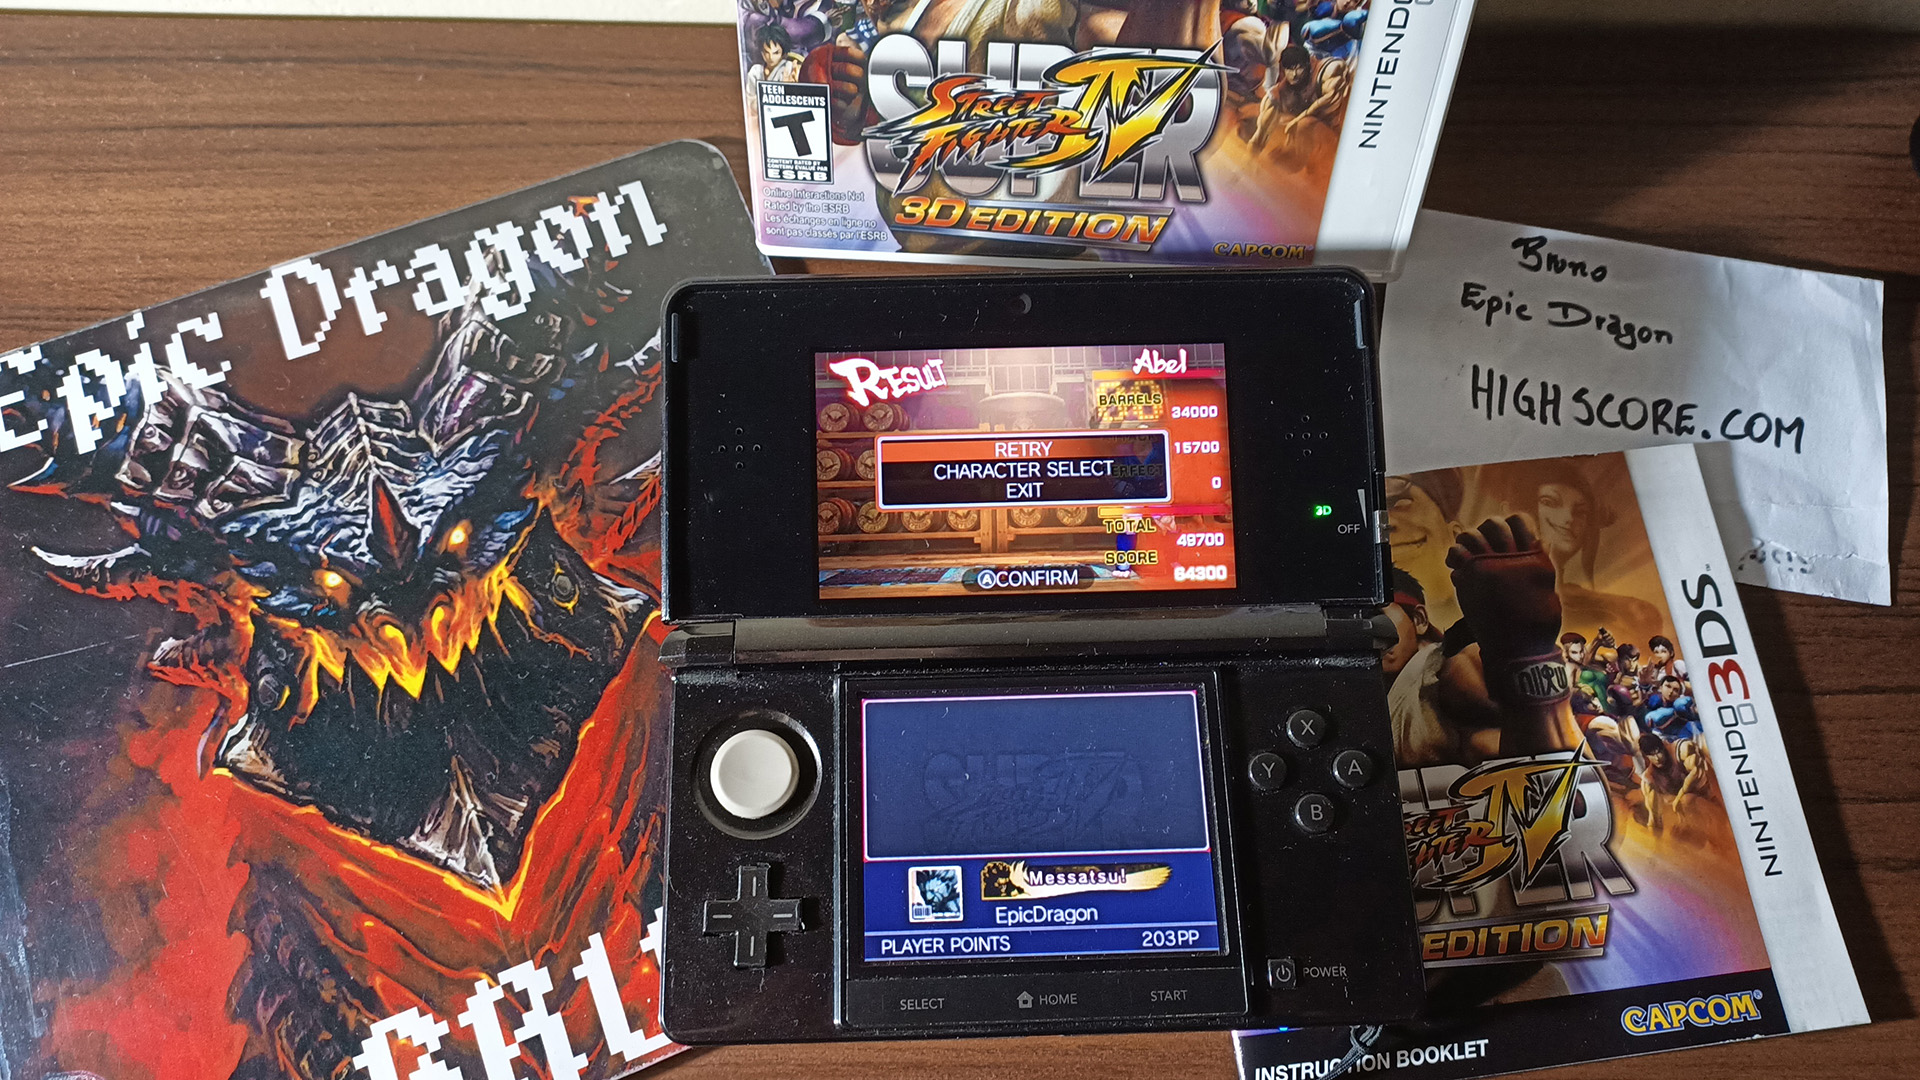 EpicDragon: Super Street Fighter IV 3D Edition: Challenge: Barrel Buster [Abel] (Nintendo 3DS) 64,300 points on 2022-08-01 20:47:31